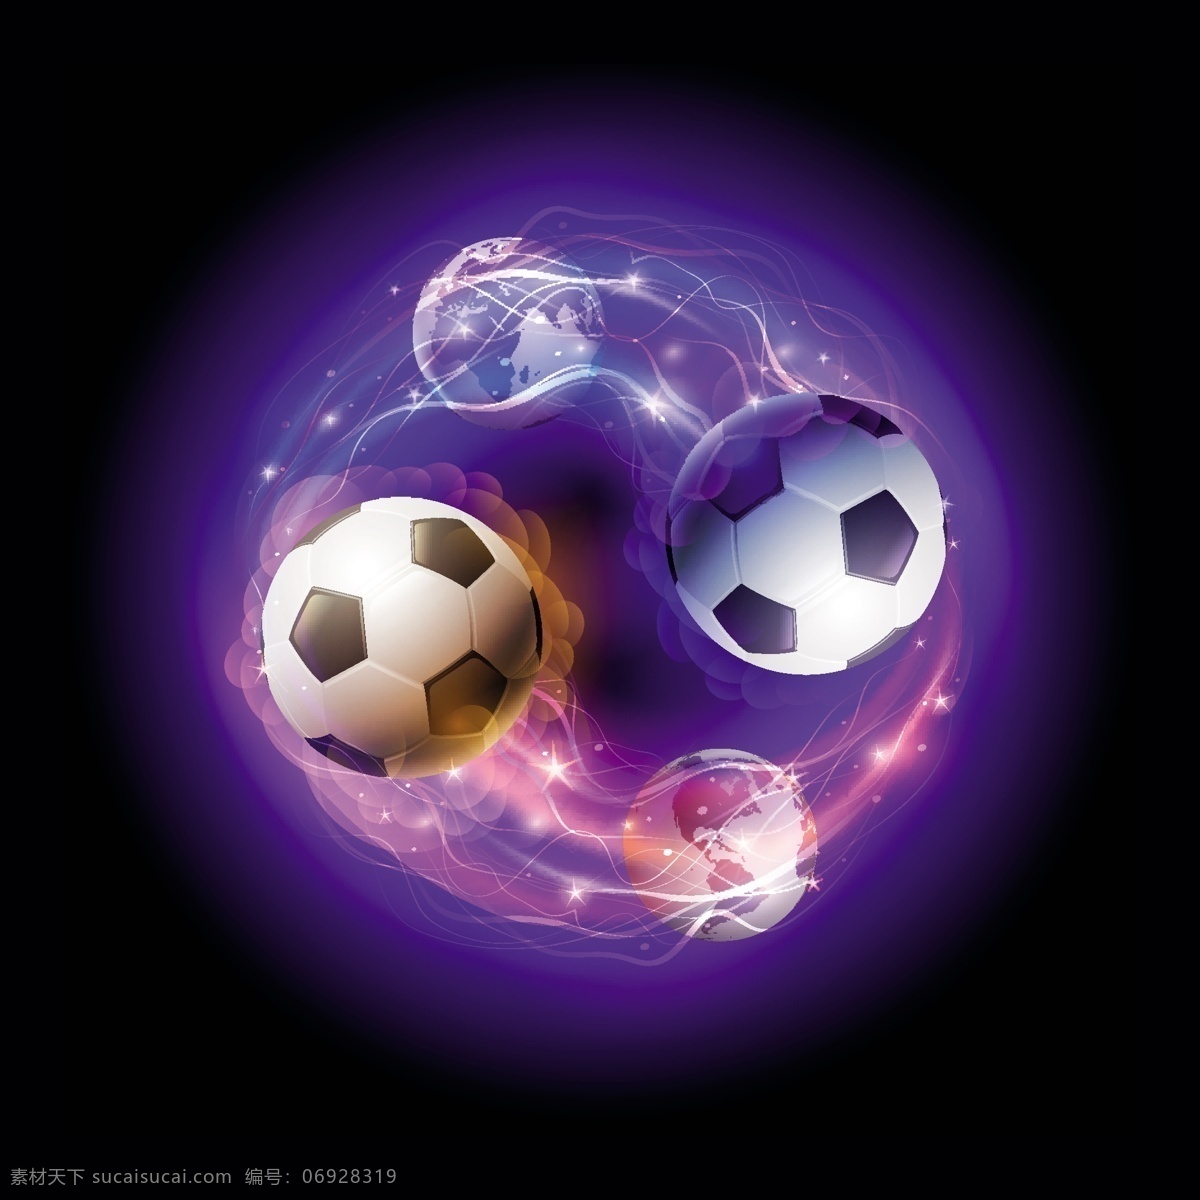 足球 欧洲世界杯 手绘 地球 世界杯 欧洲杯 亚洲杯 世界杯海报 世界杯背景 足球俱乐部 足球运动 体育运动 矢量 生活百科 体育用品